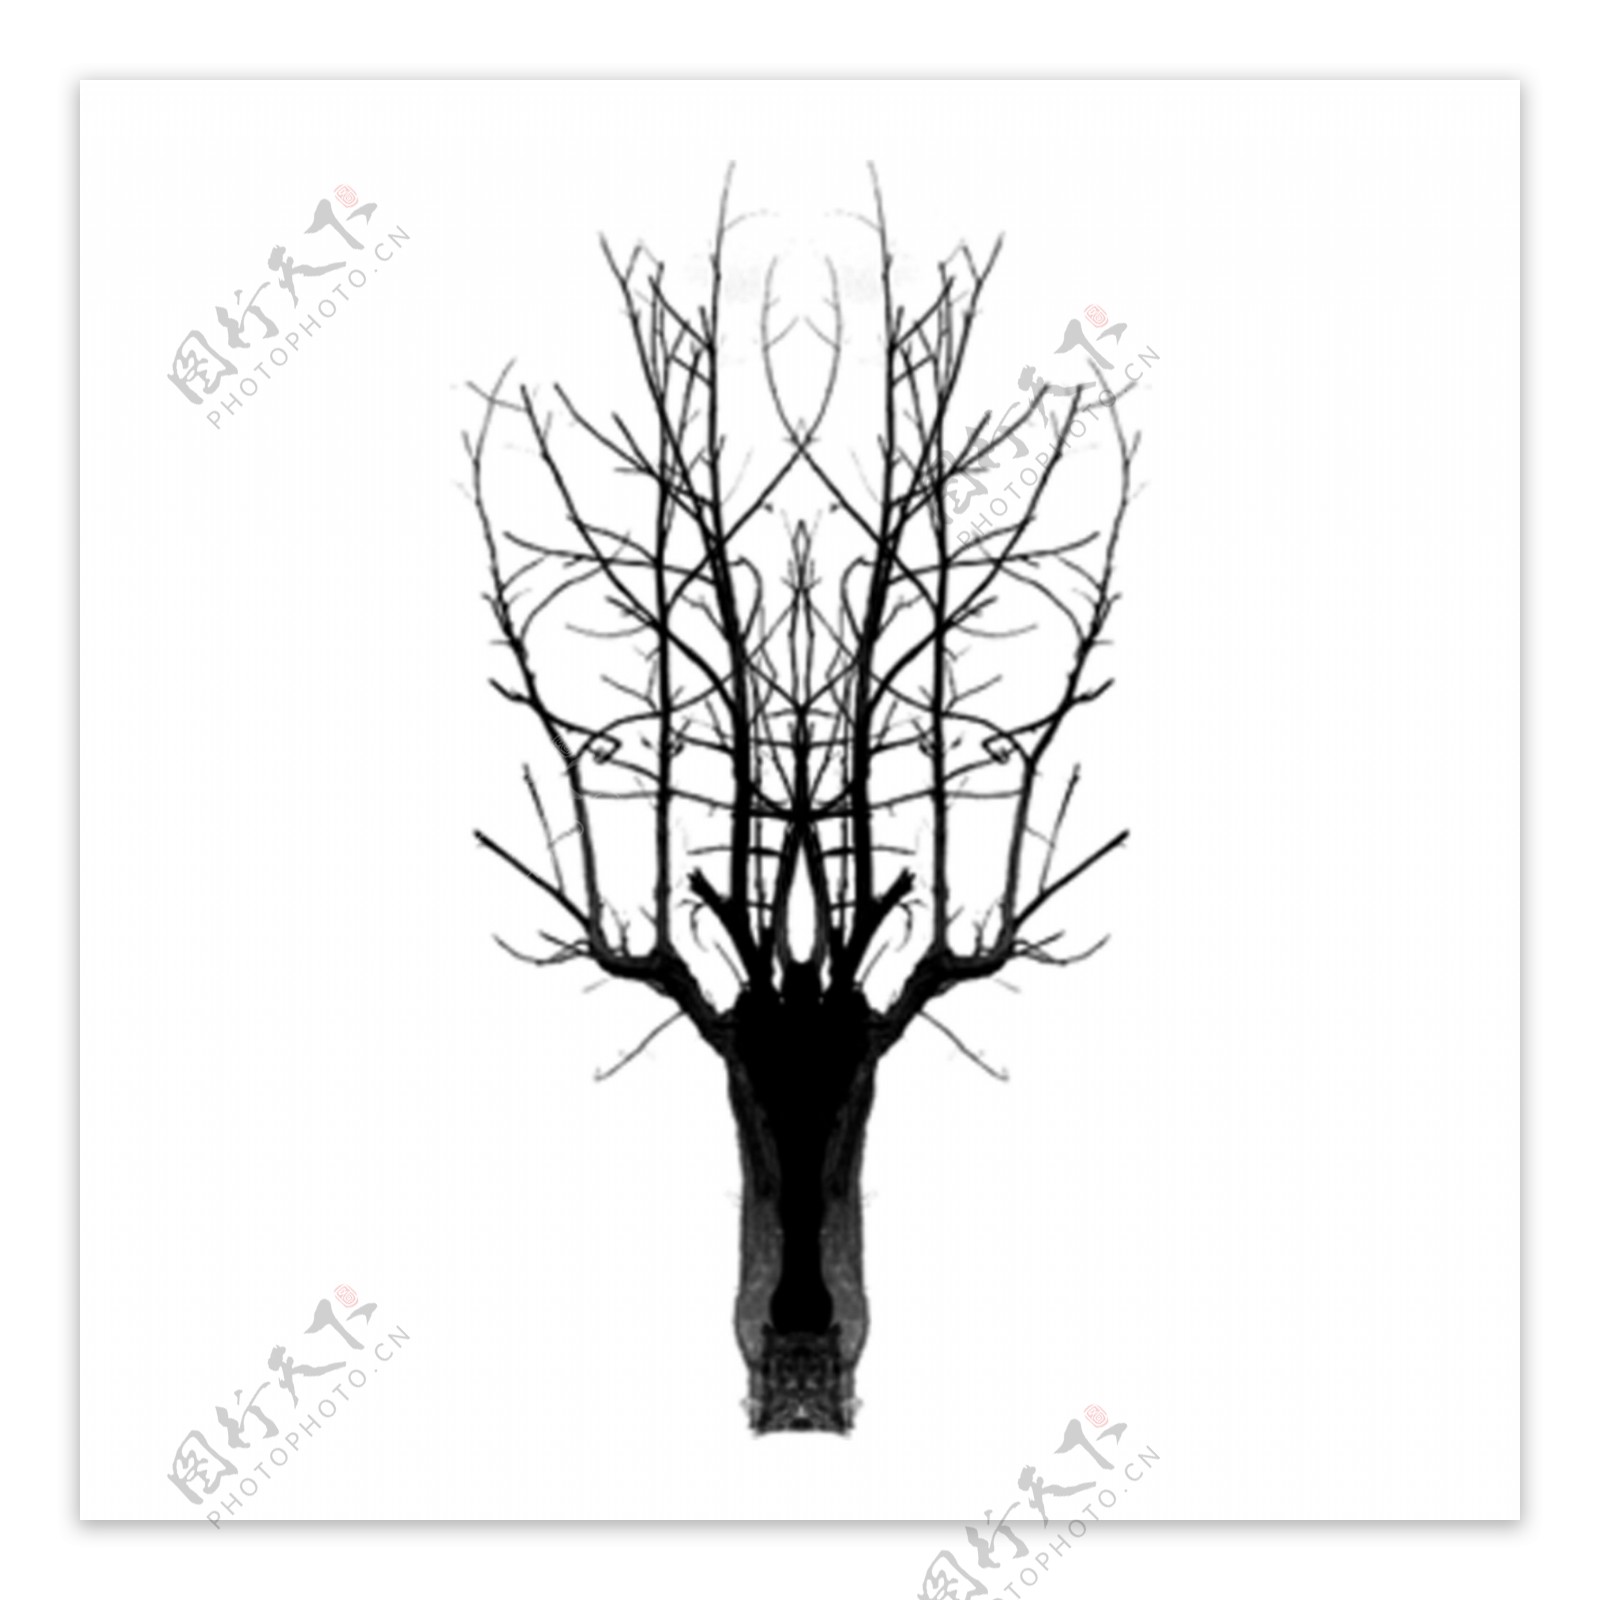 手绘简约冬季黑白枯树木剪影可商用素材